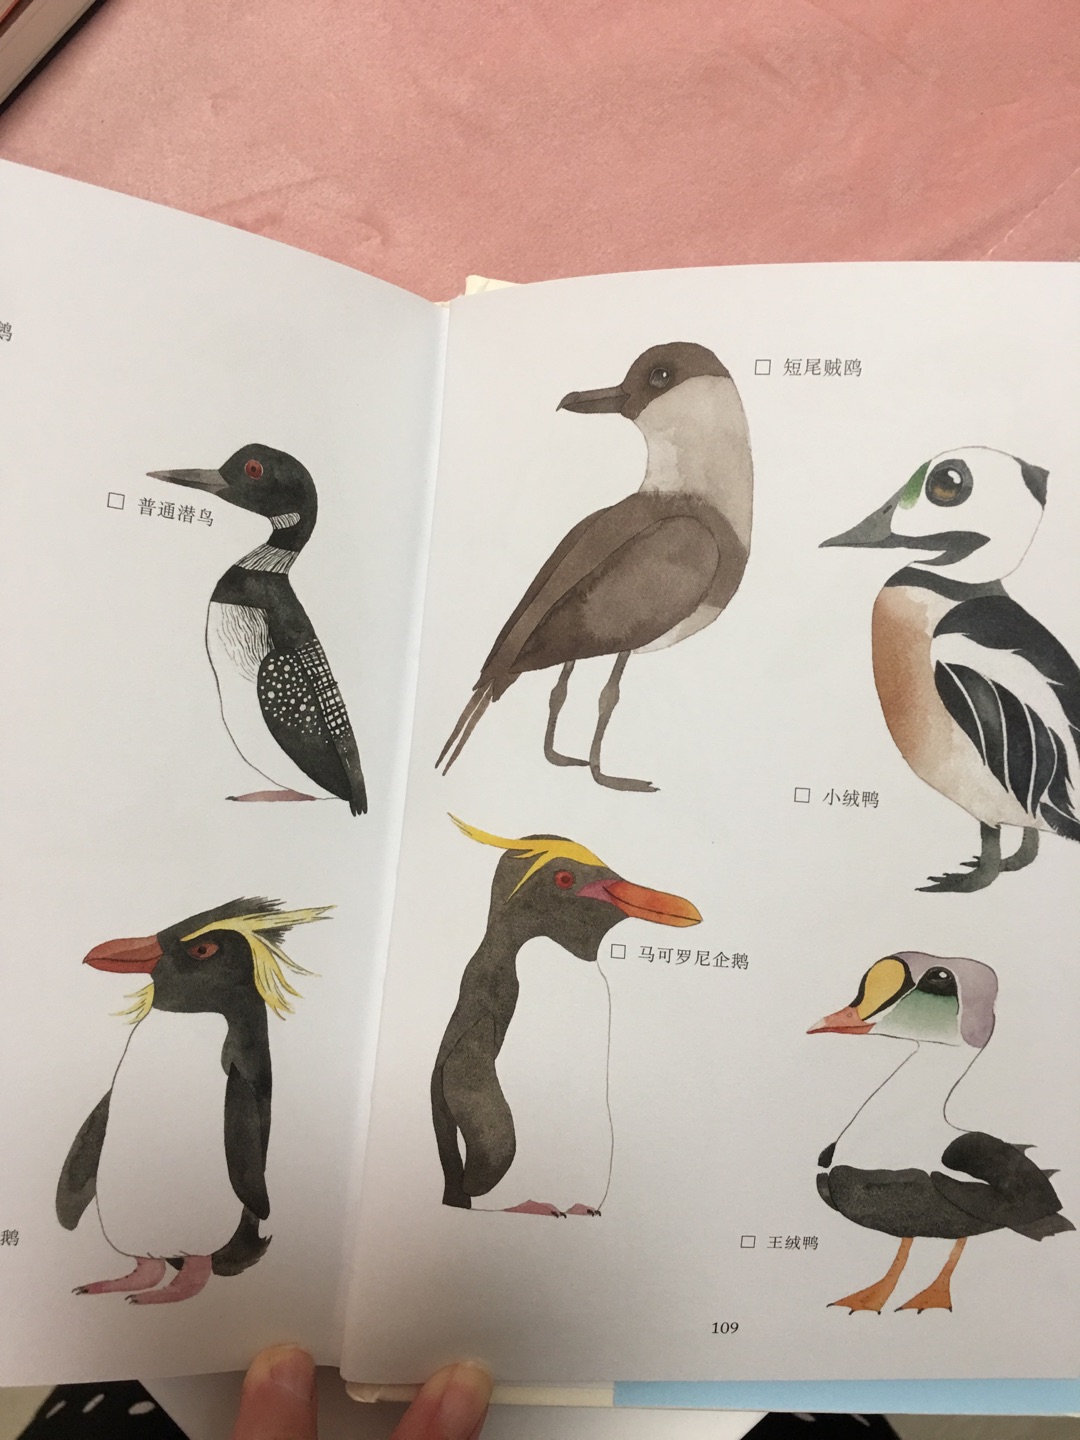 很漂亮的一本书，里面画的各种鸟也不错，大人小孩都可以看的，值得购买。